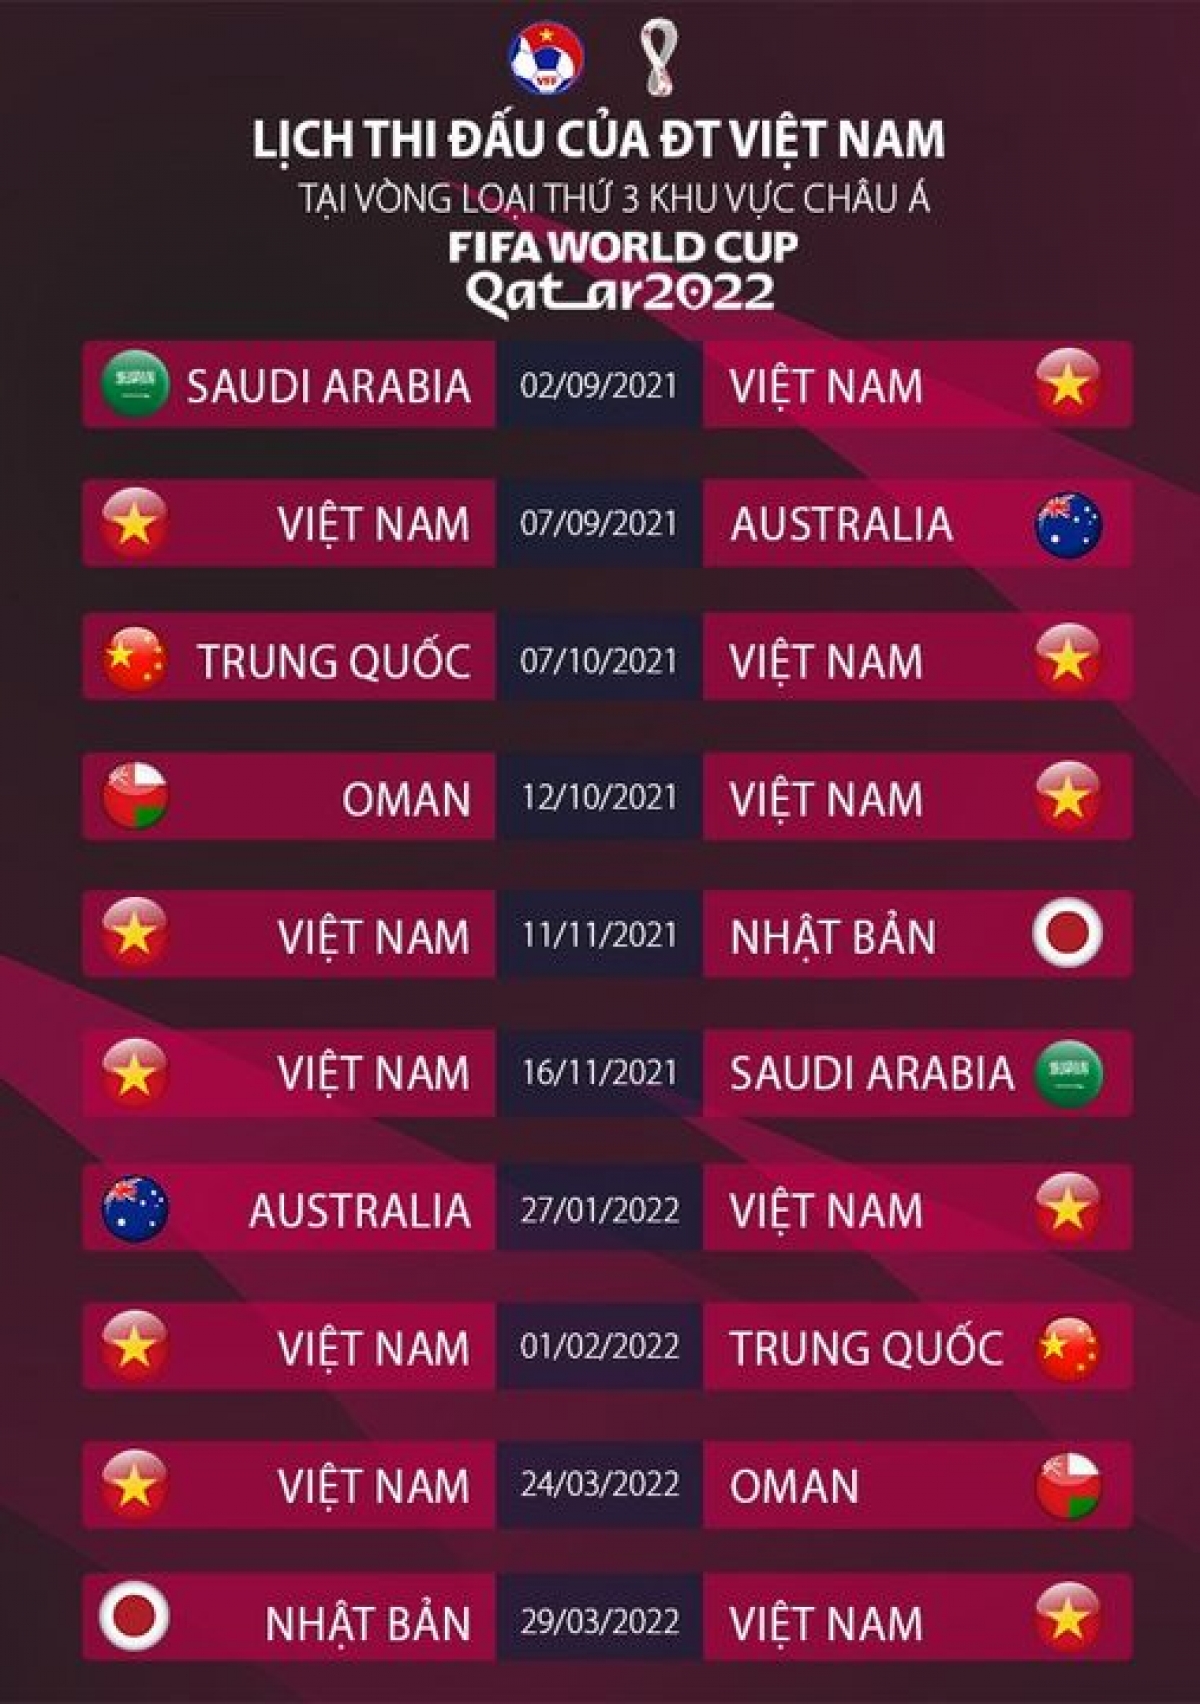 Lịch thi đấu của tuyển Việt Nam tại vòng loại thứ ba World Cup 2022